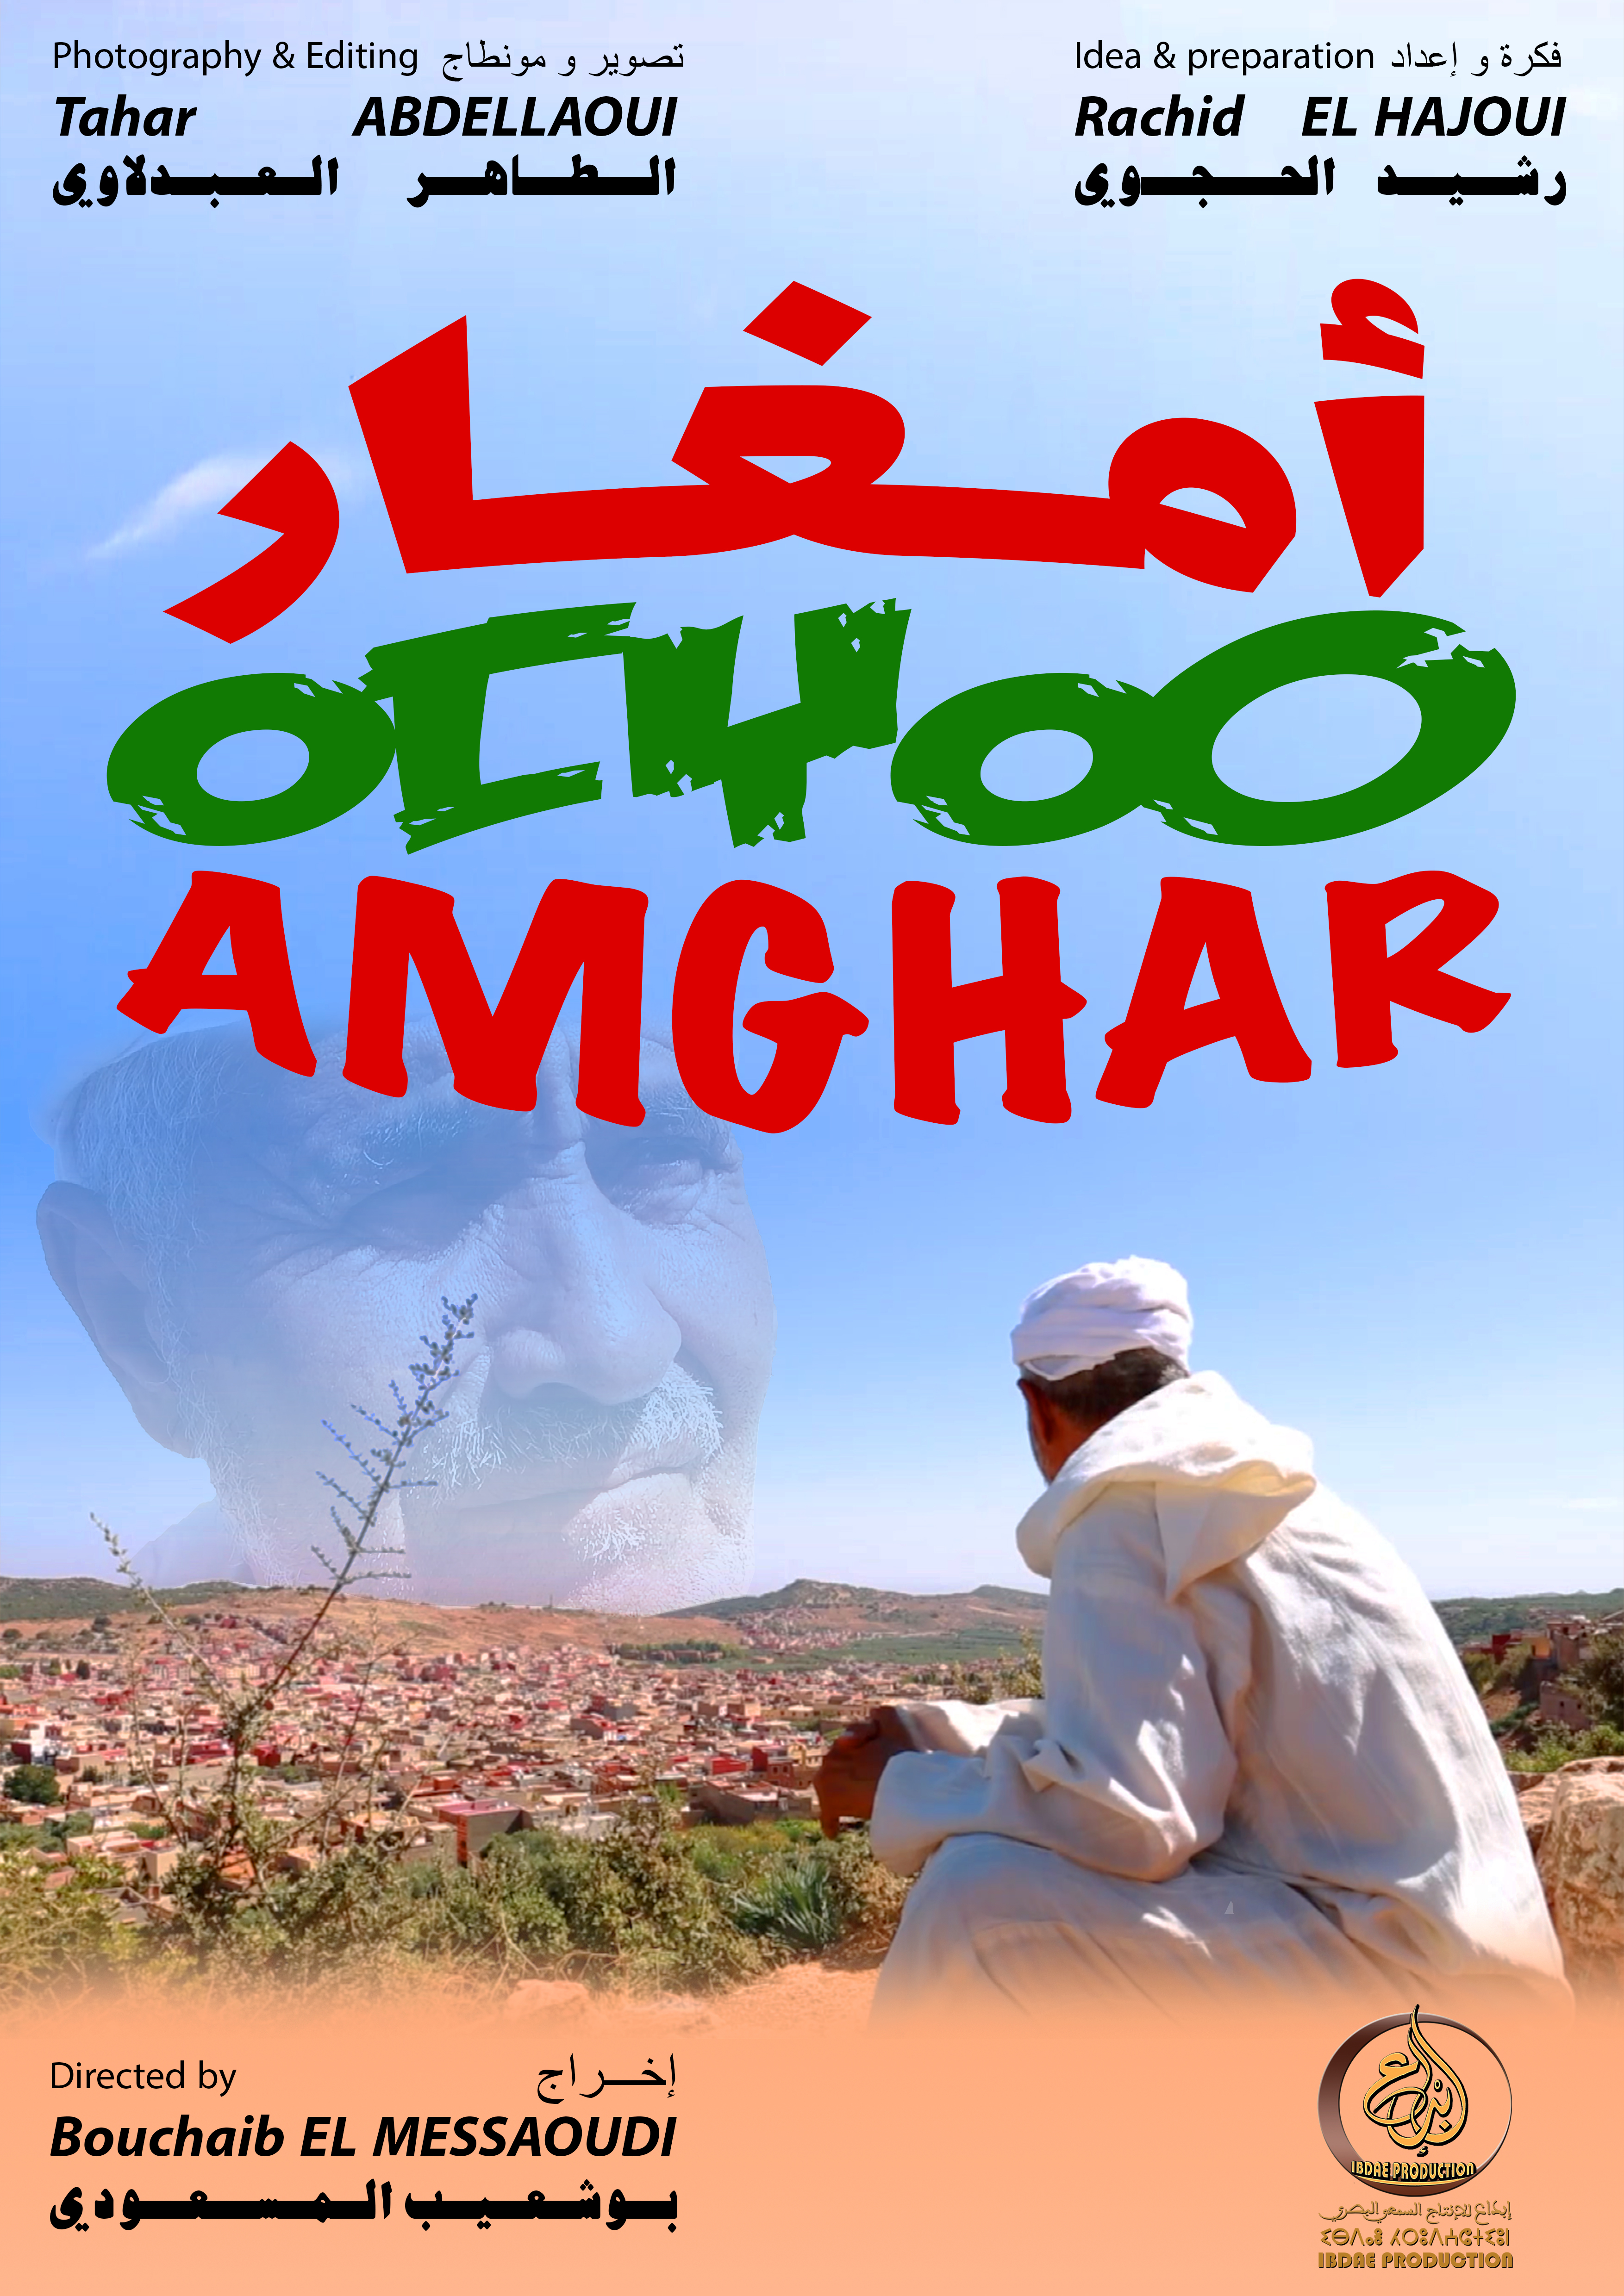 Amghar